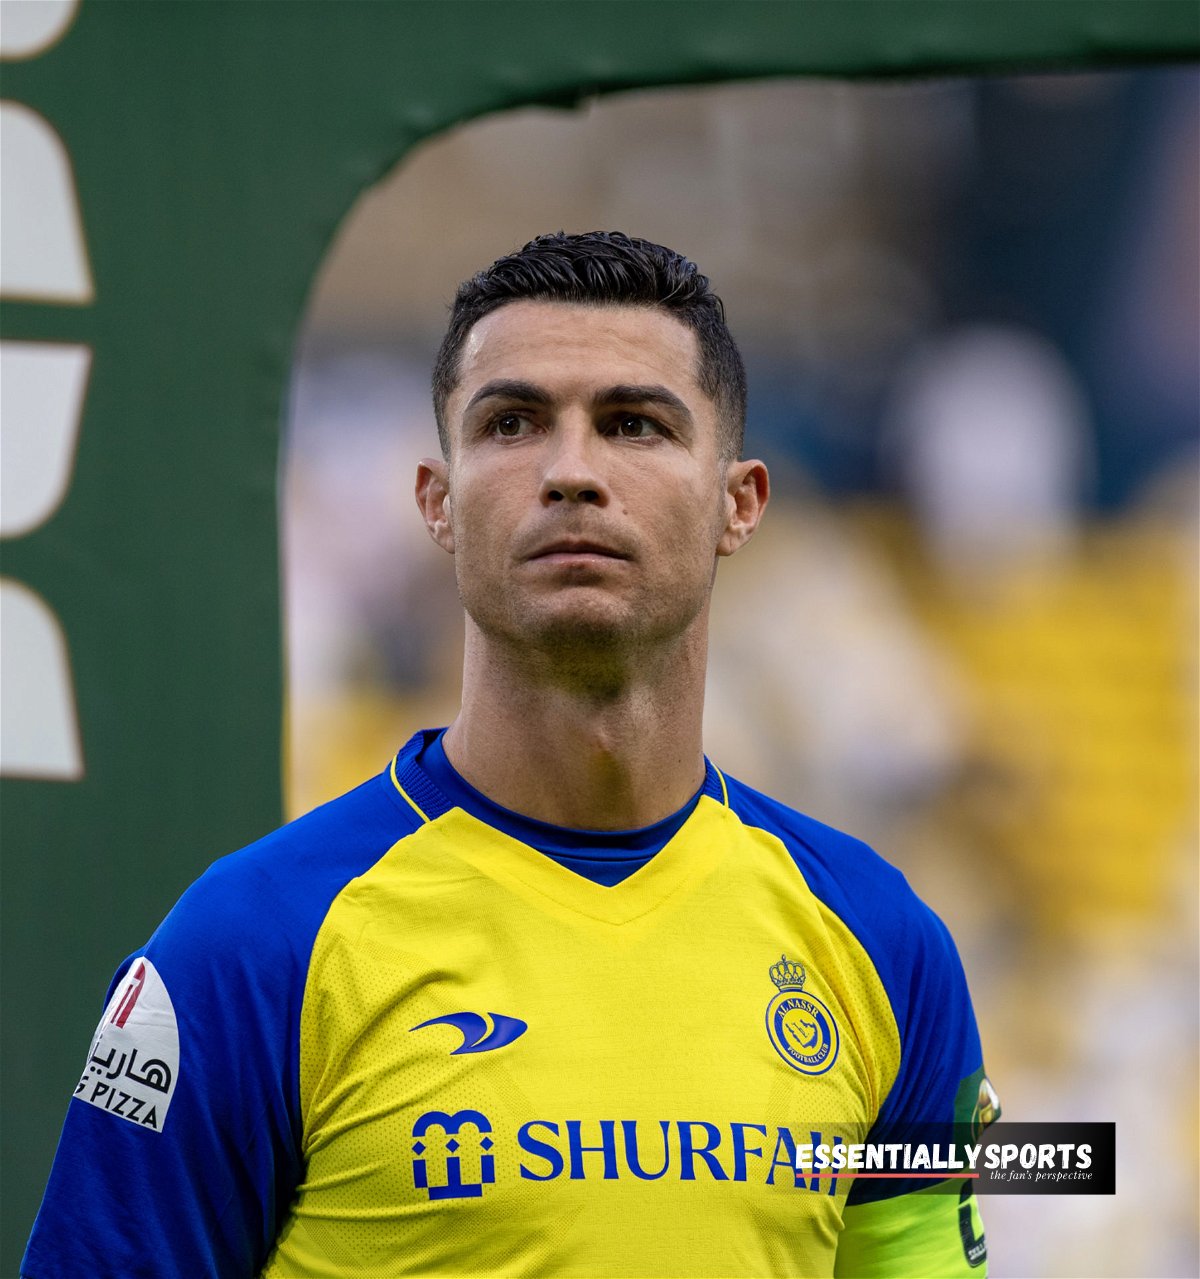 “WTF, qui est ce type?” – Cristiano Ronaldo riposte avec colère contre son ex-coéquipier qui s’est attribué le mérite de l’un de ses Ballon D’or